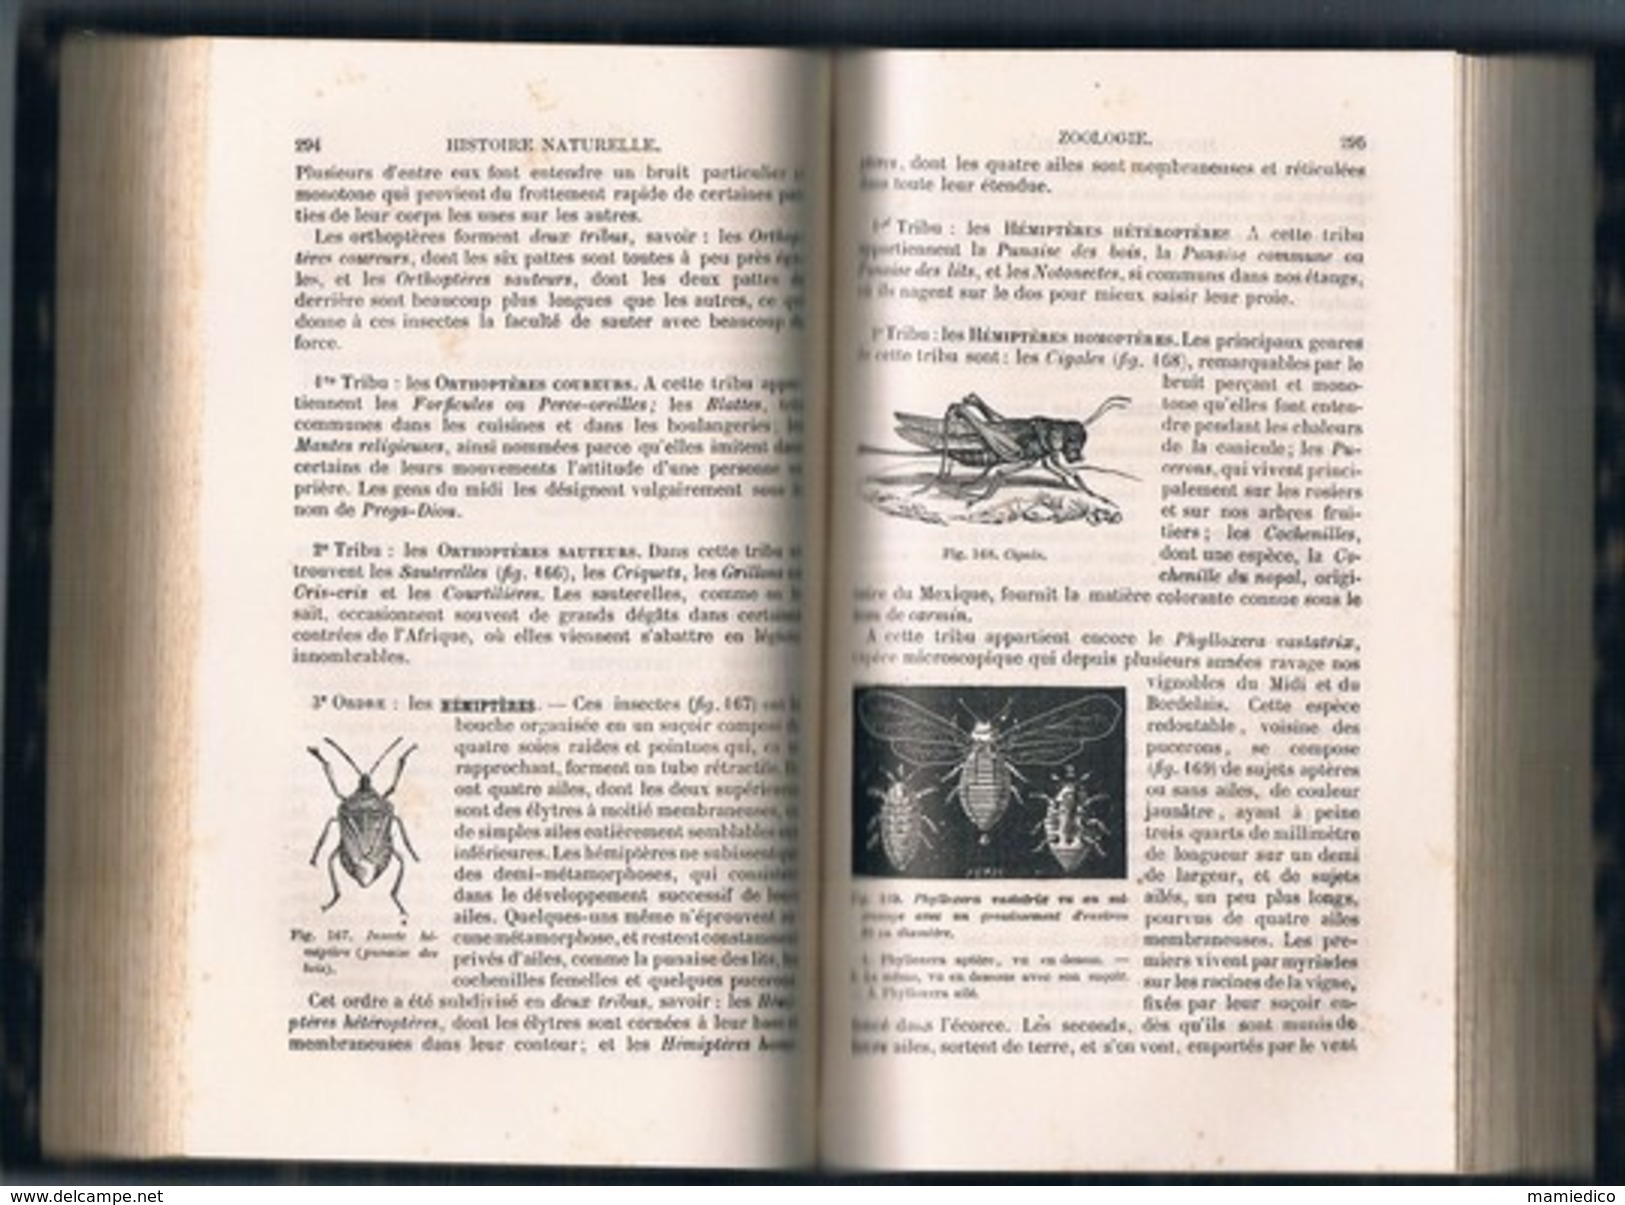 1885 HISTOIRE NATURELLE De J.LANGLEBERT 620 Pages Etat Très Correct Voir Description - 1801-1900